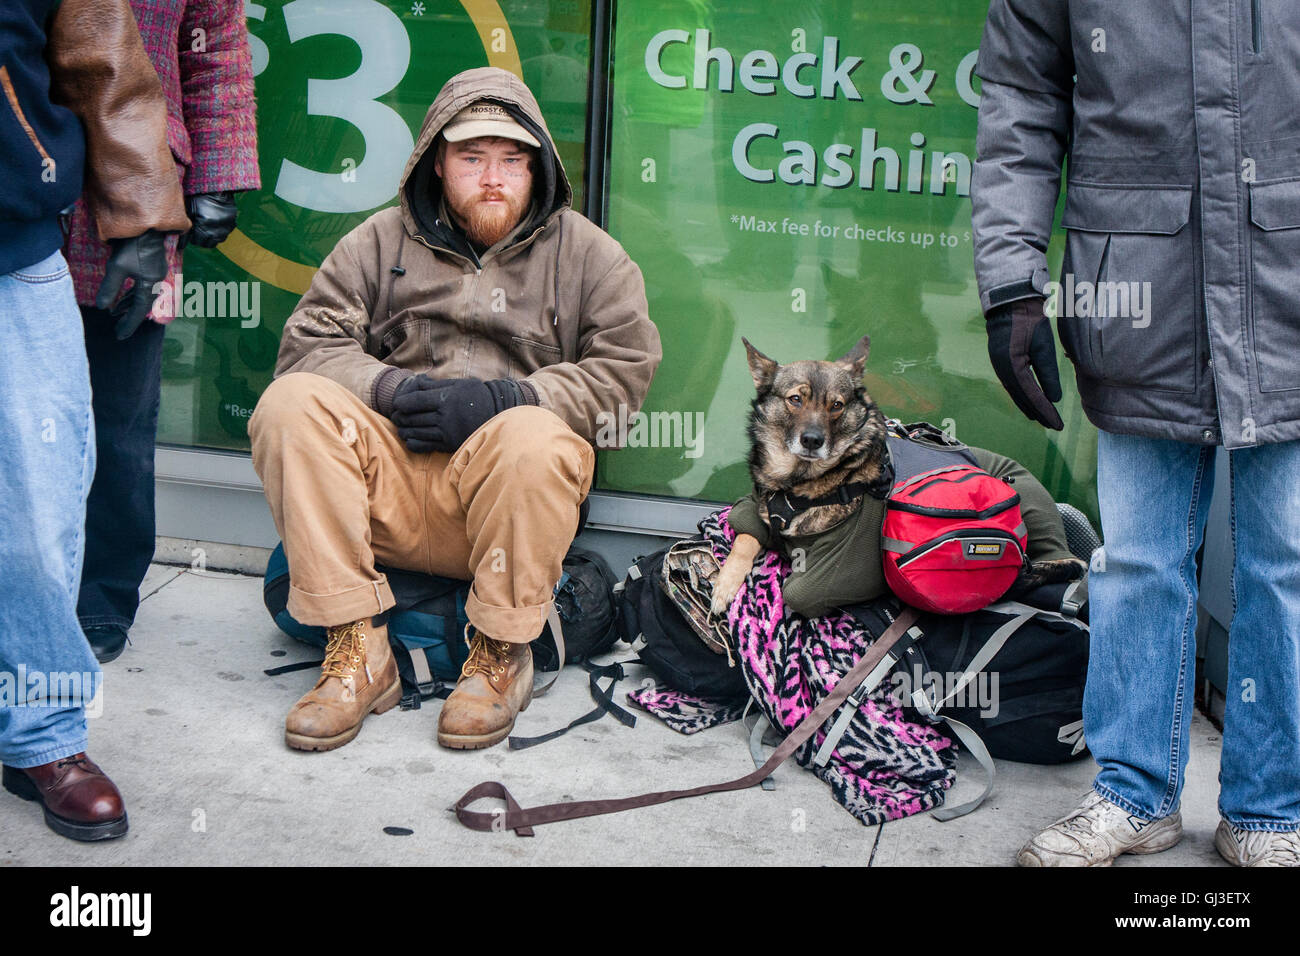 Chicago, Illinois - 28. November 2014: A Chicago Obdachlosen Mann und sein Hund sitzen auf dem Bürgersteig an einem kalten, kalten Tag Ende November. Stockfoto